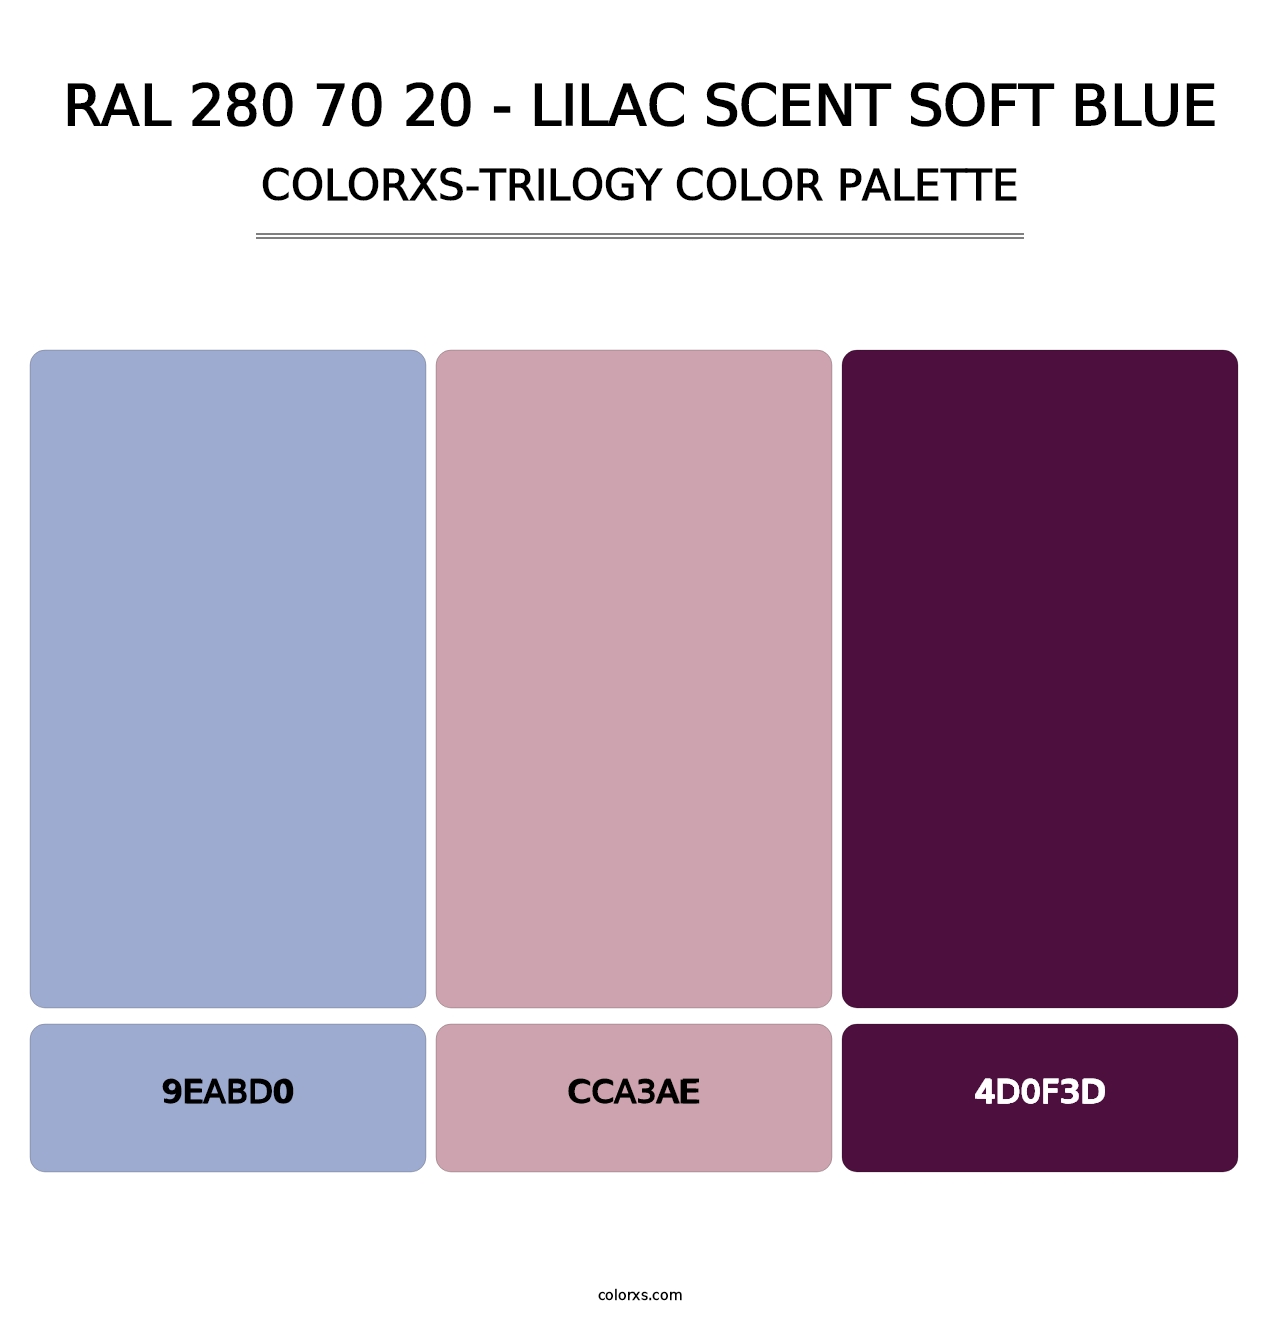 RAL 280 70 20 - Lilac Scent Soft Blue - Colorxs Trilogy Palette